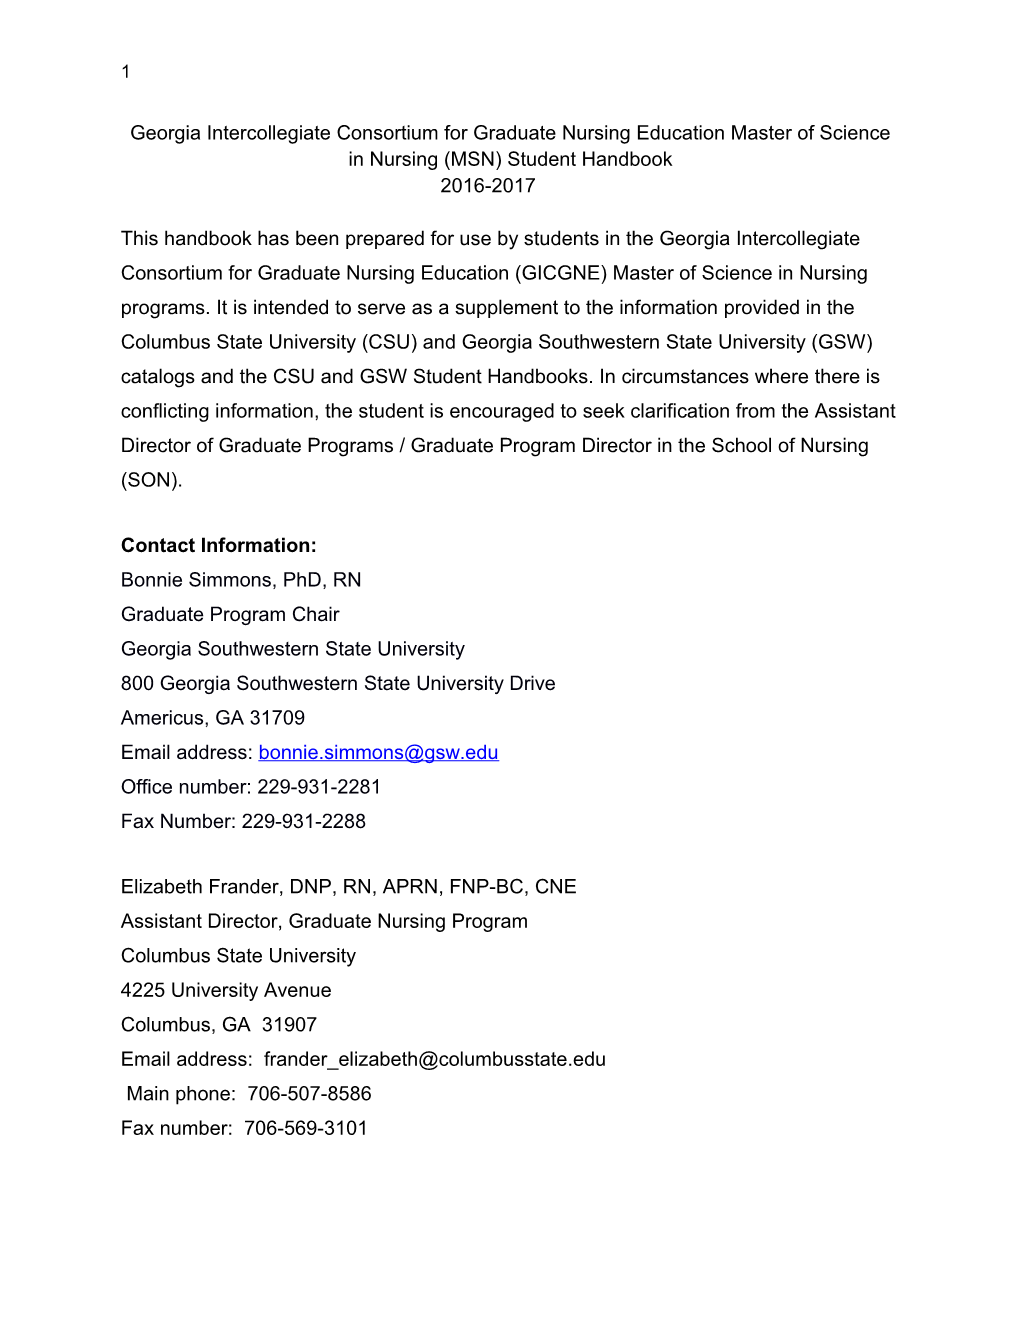 Georgia Intercollegiate Consortium for Graduate Nursing Education Master of Science In